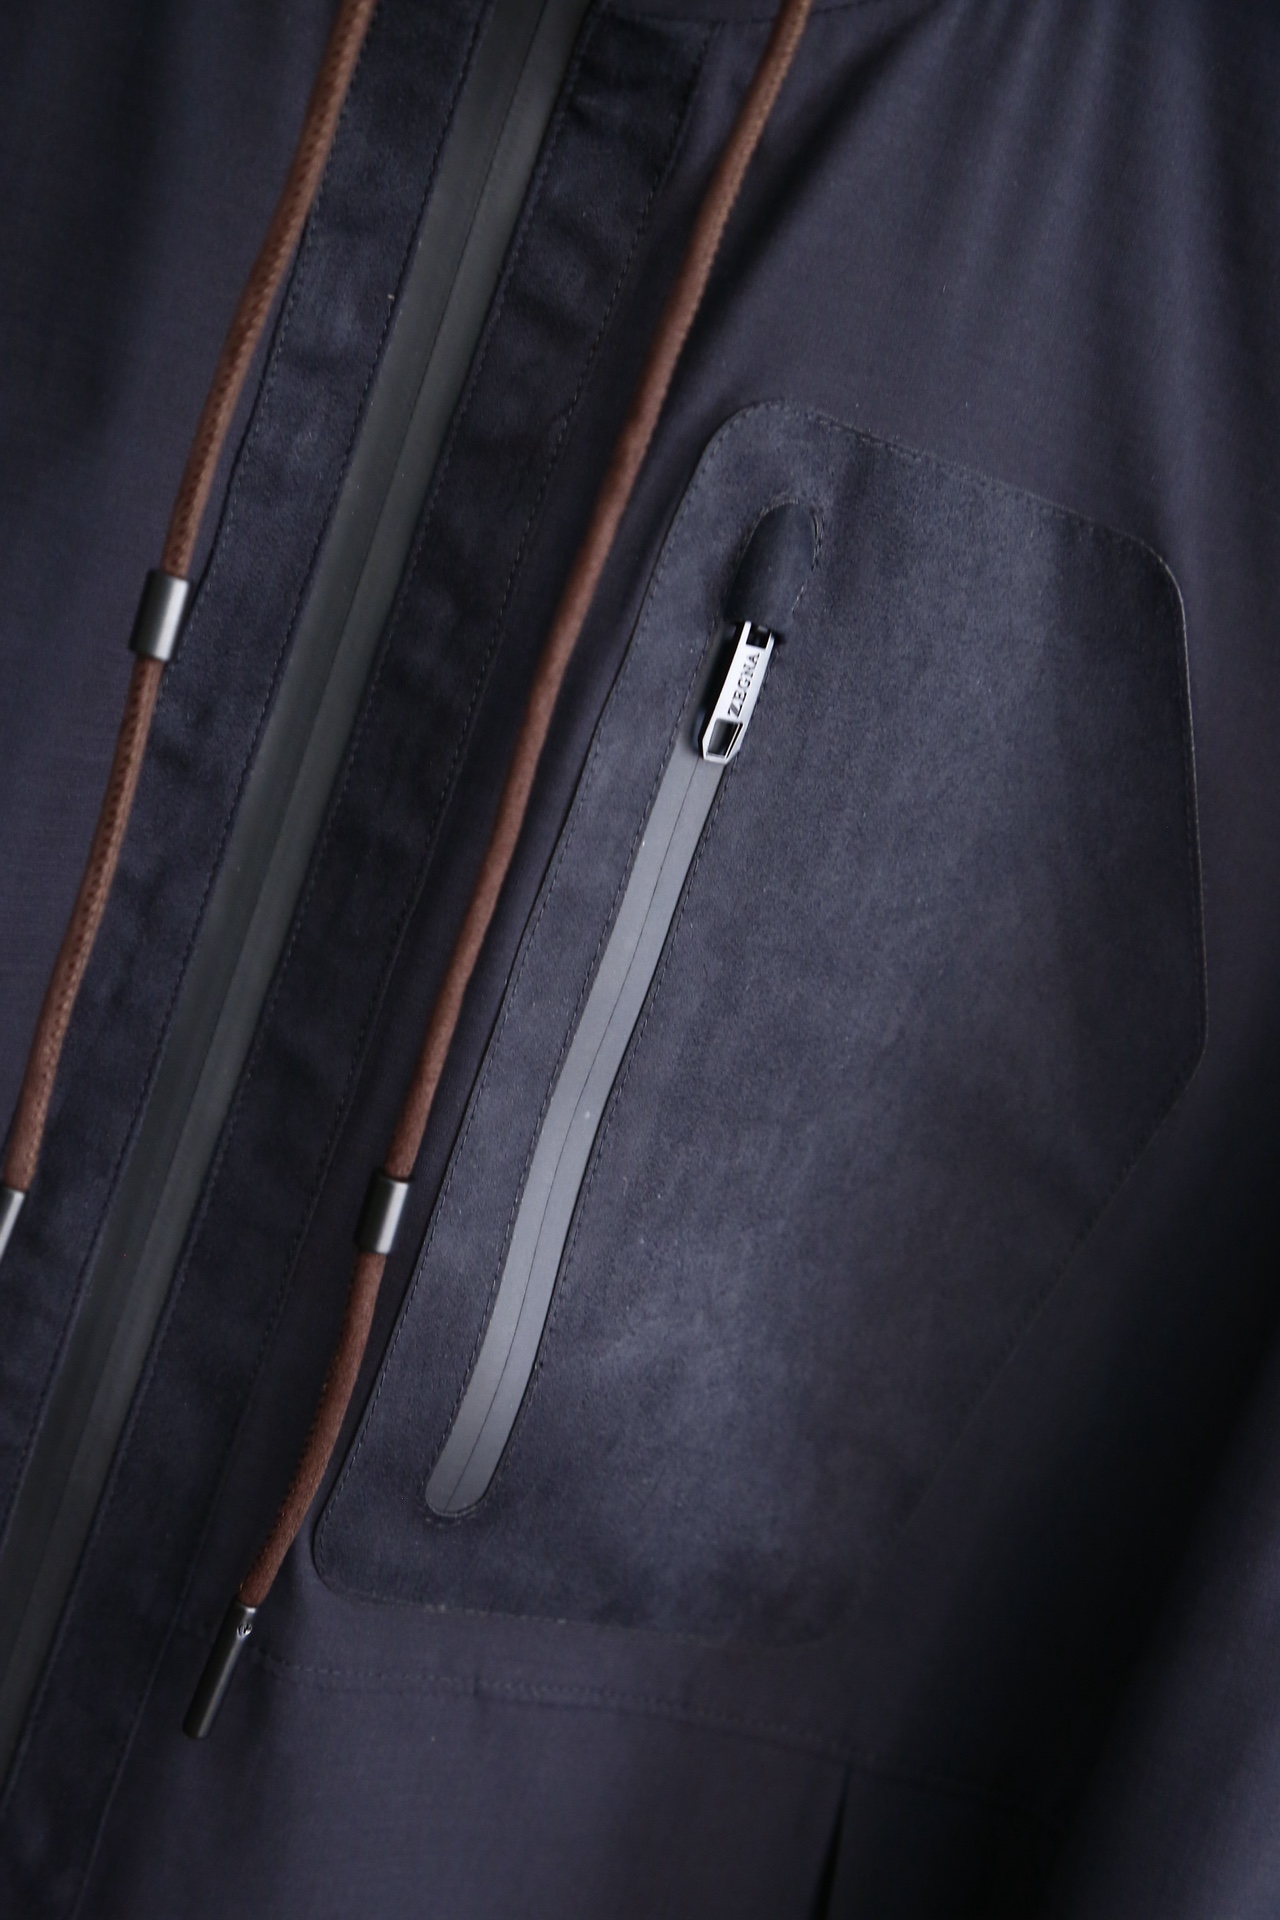 杰尼亚-24春夏新品高密度三防面料经典夹克外套此款夹克选用客供进口100%聚酯纤维成分打造高支数高密度尼